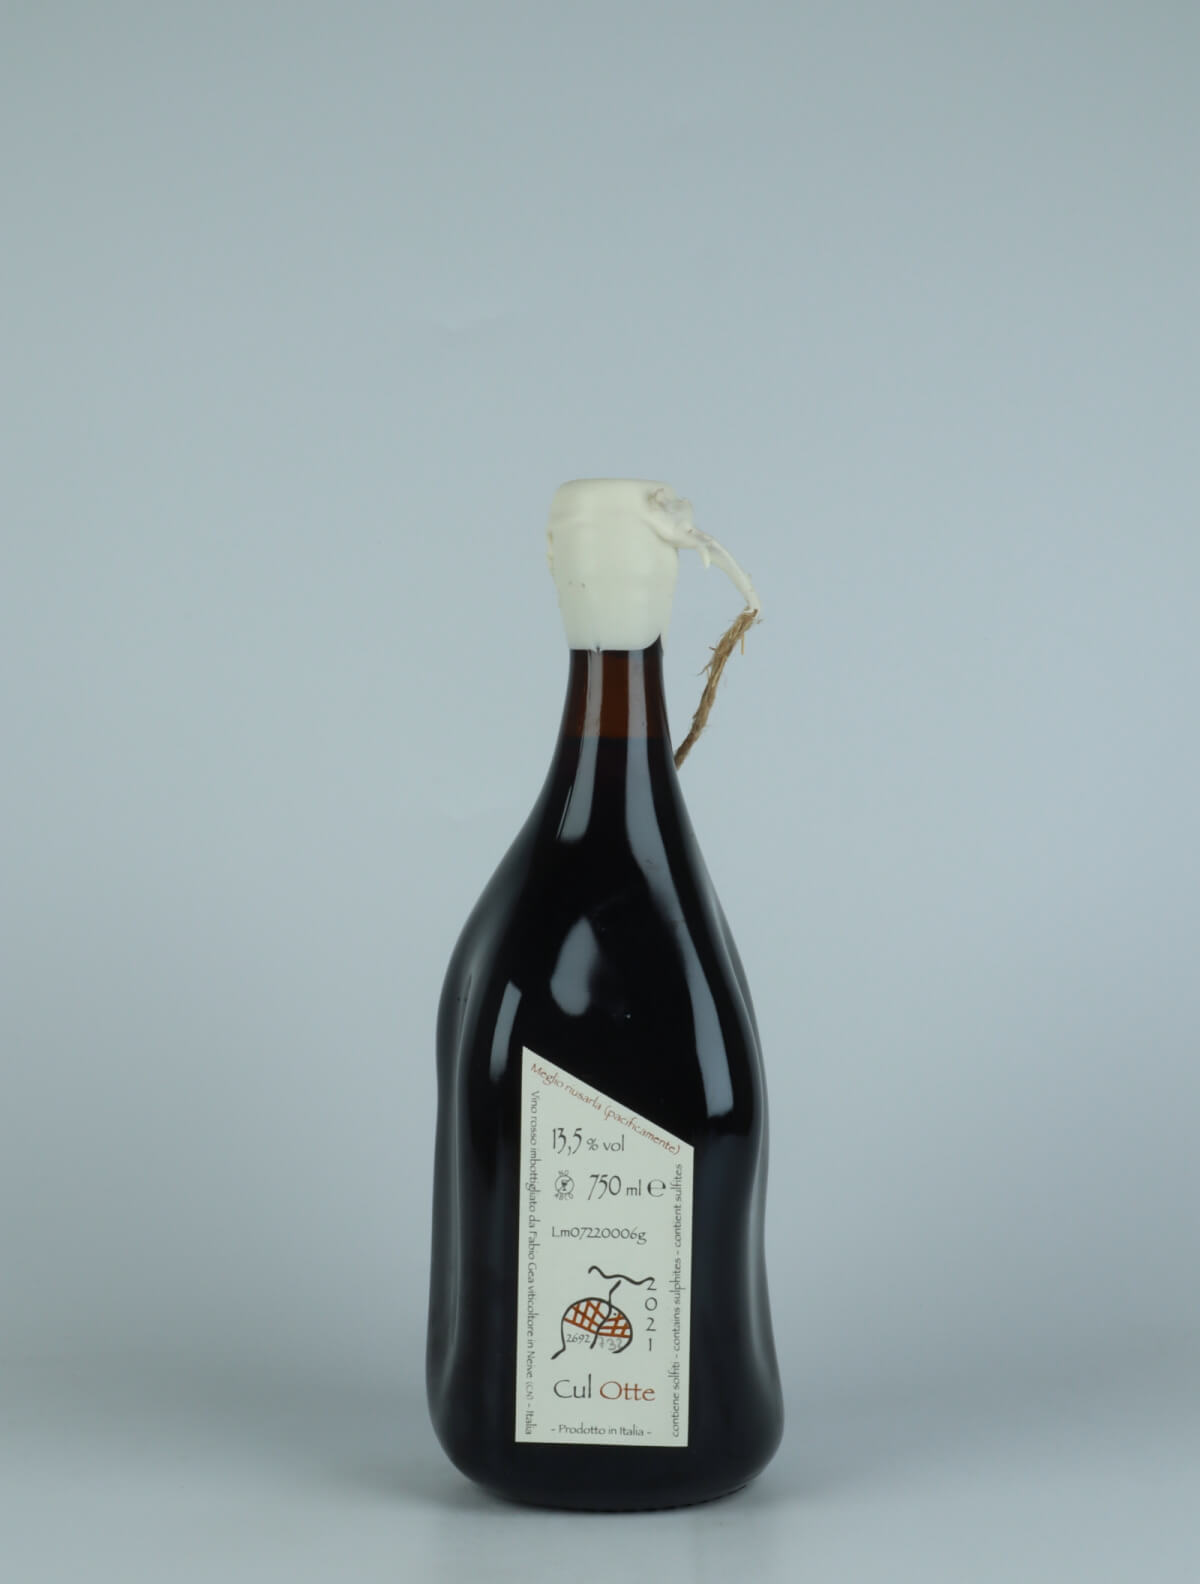 A bottle 2021 Cul Otte Red wine from Fabio Gea, Piedmont in Italy